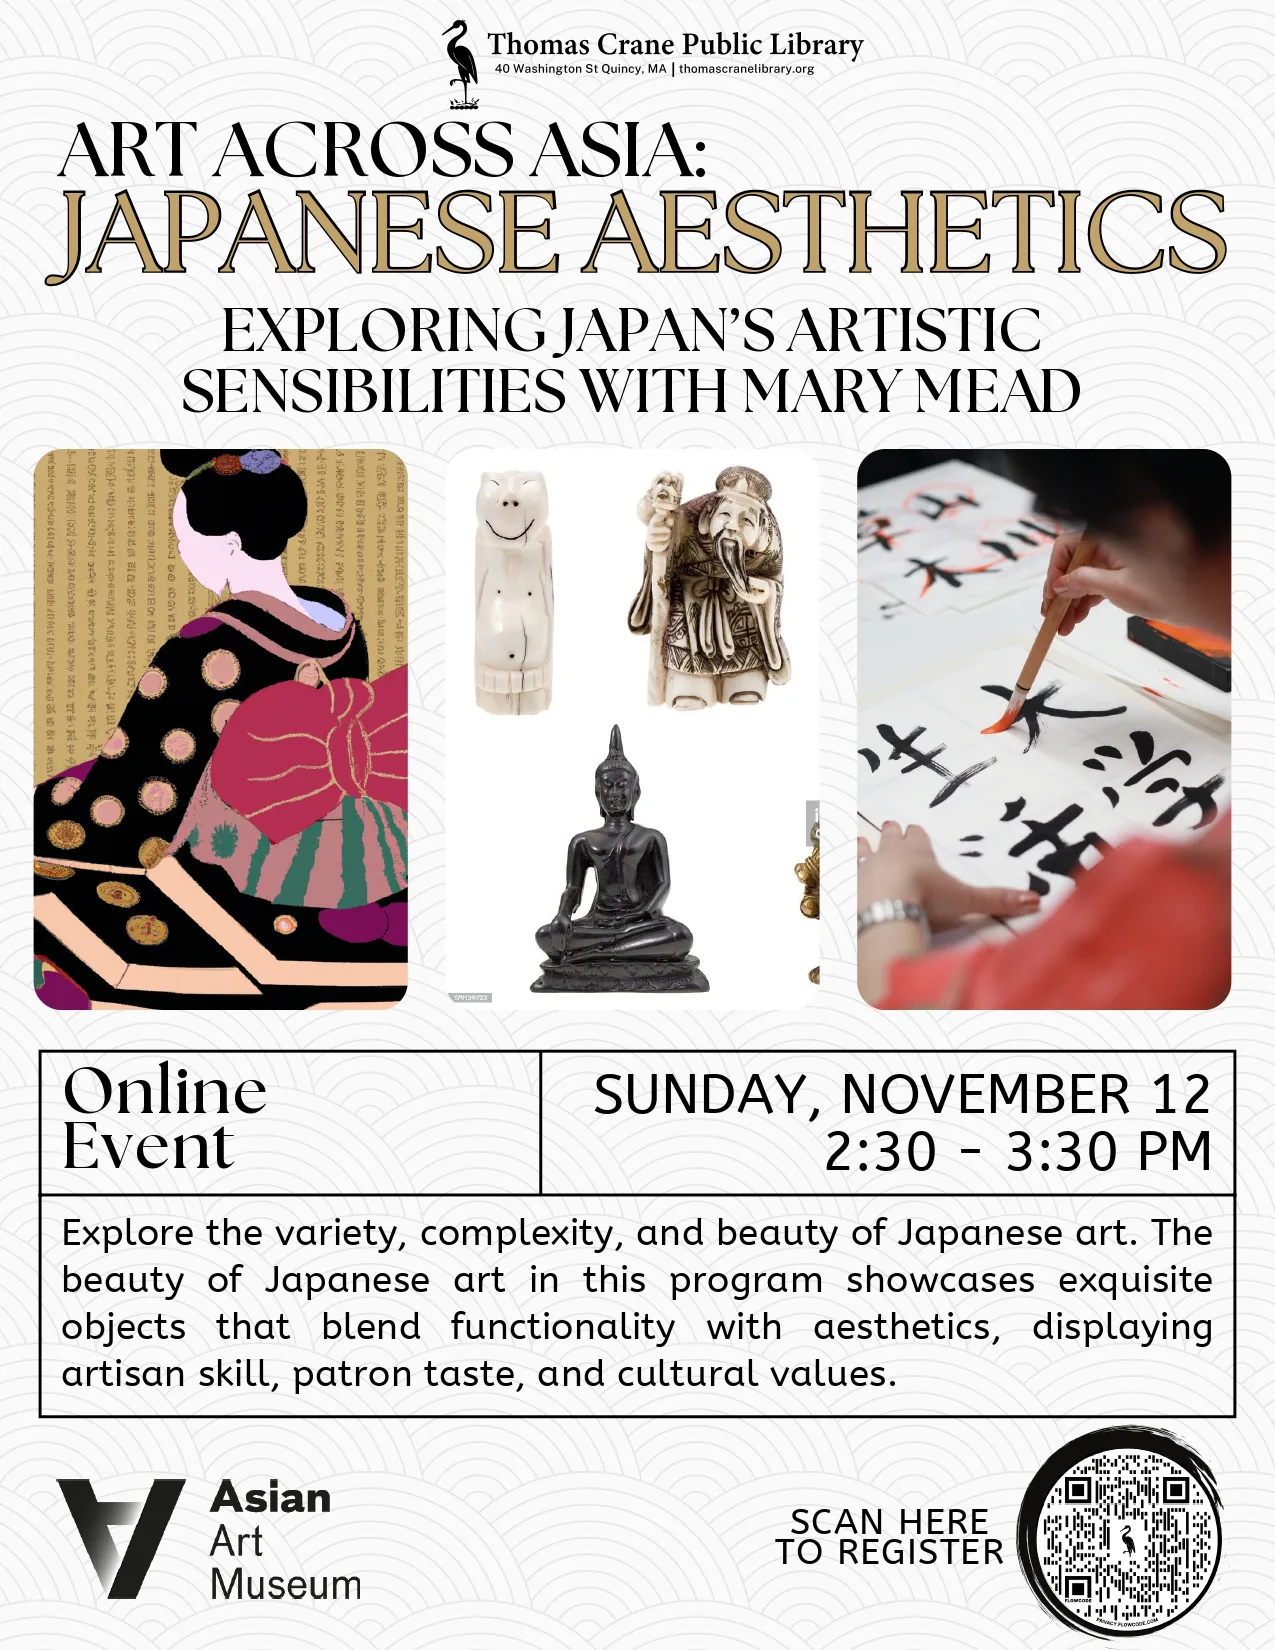 アジアをまたぐアート: 日本の美学 – トーマス・クレーン公共図書館でのオンライン・イベント、メアリー・ミード博士とともに日本の芸術的感性を探求